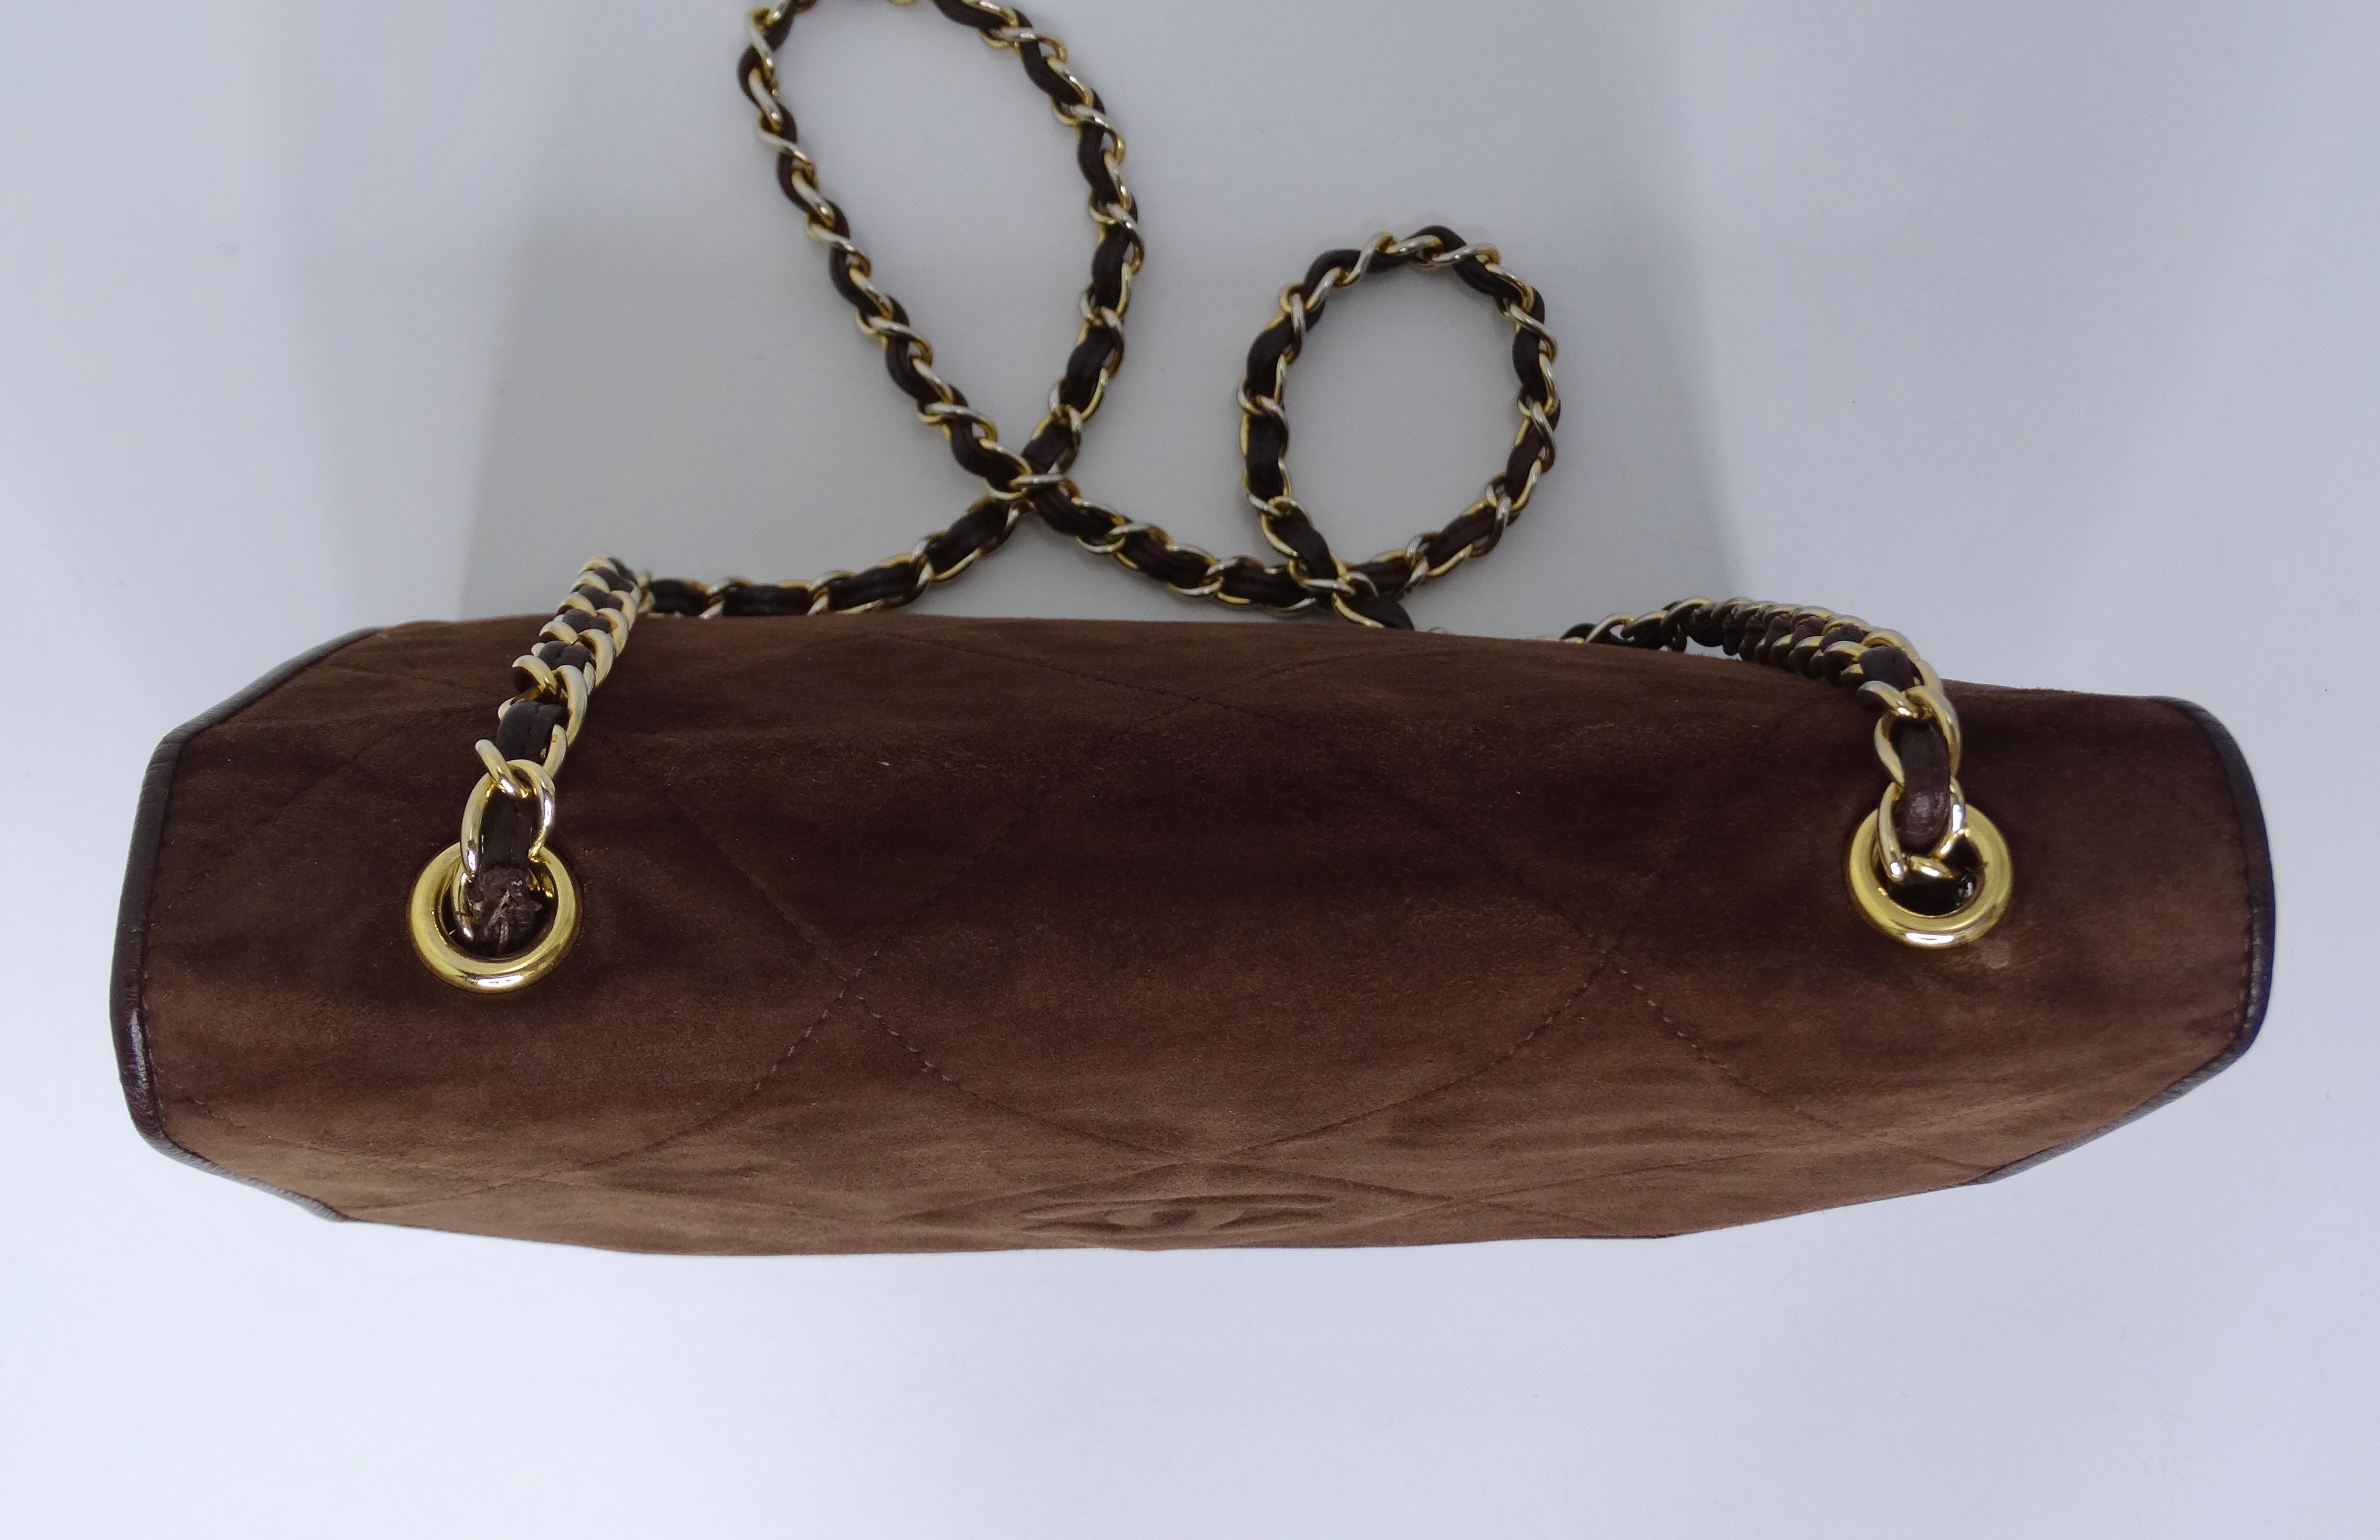 Chanel Vintage Brown Suede Flap Bag 2